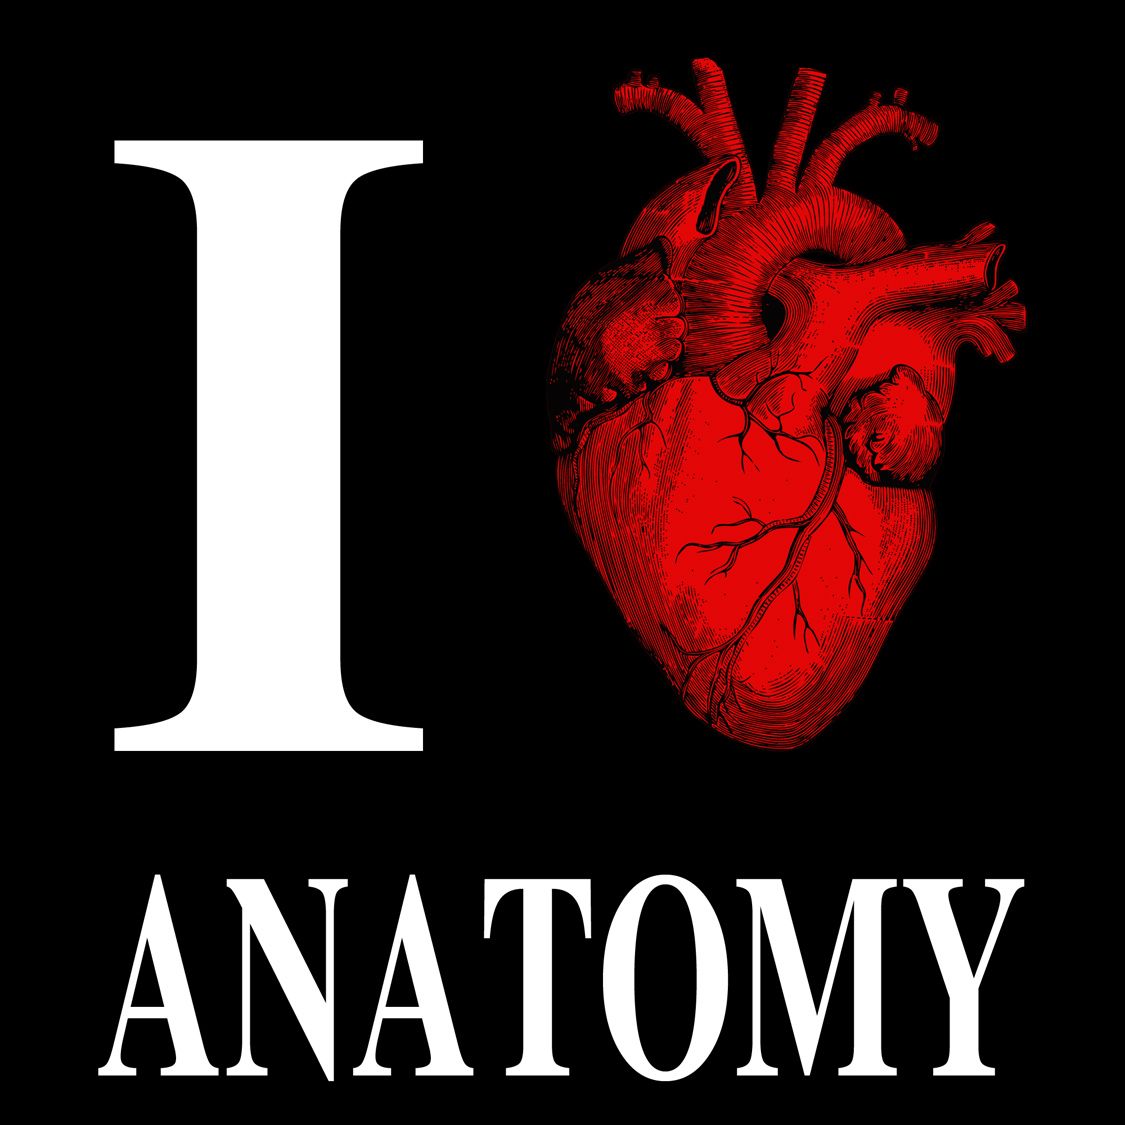 I love anatomy. 